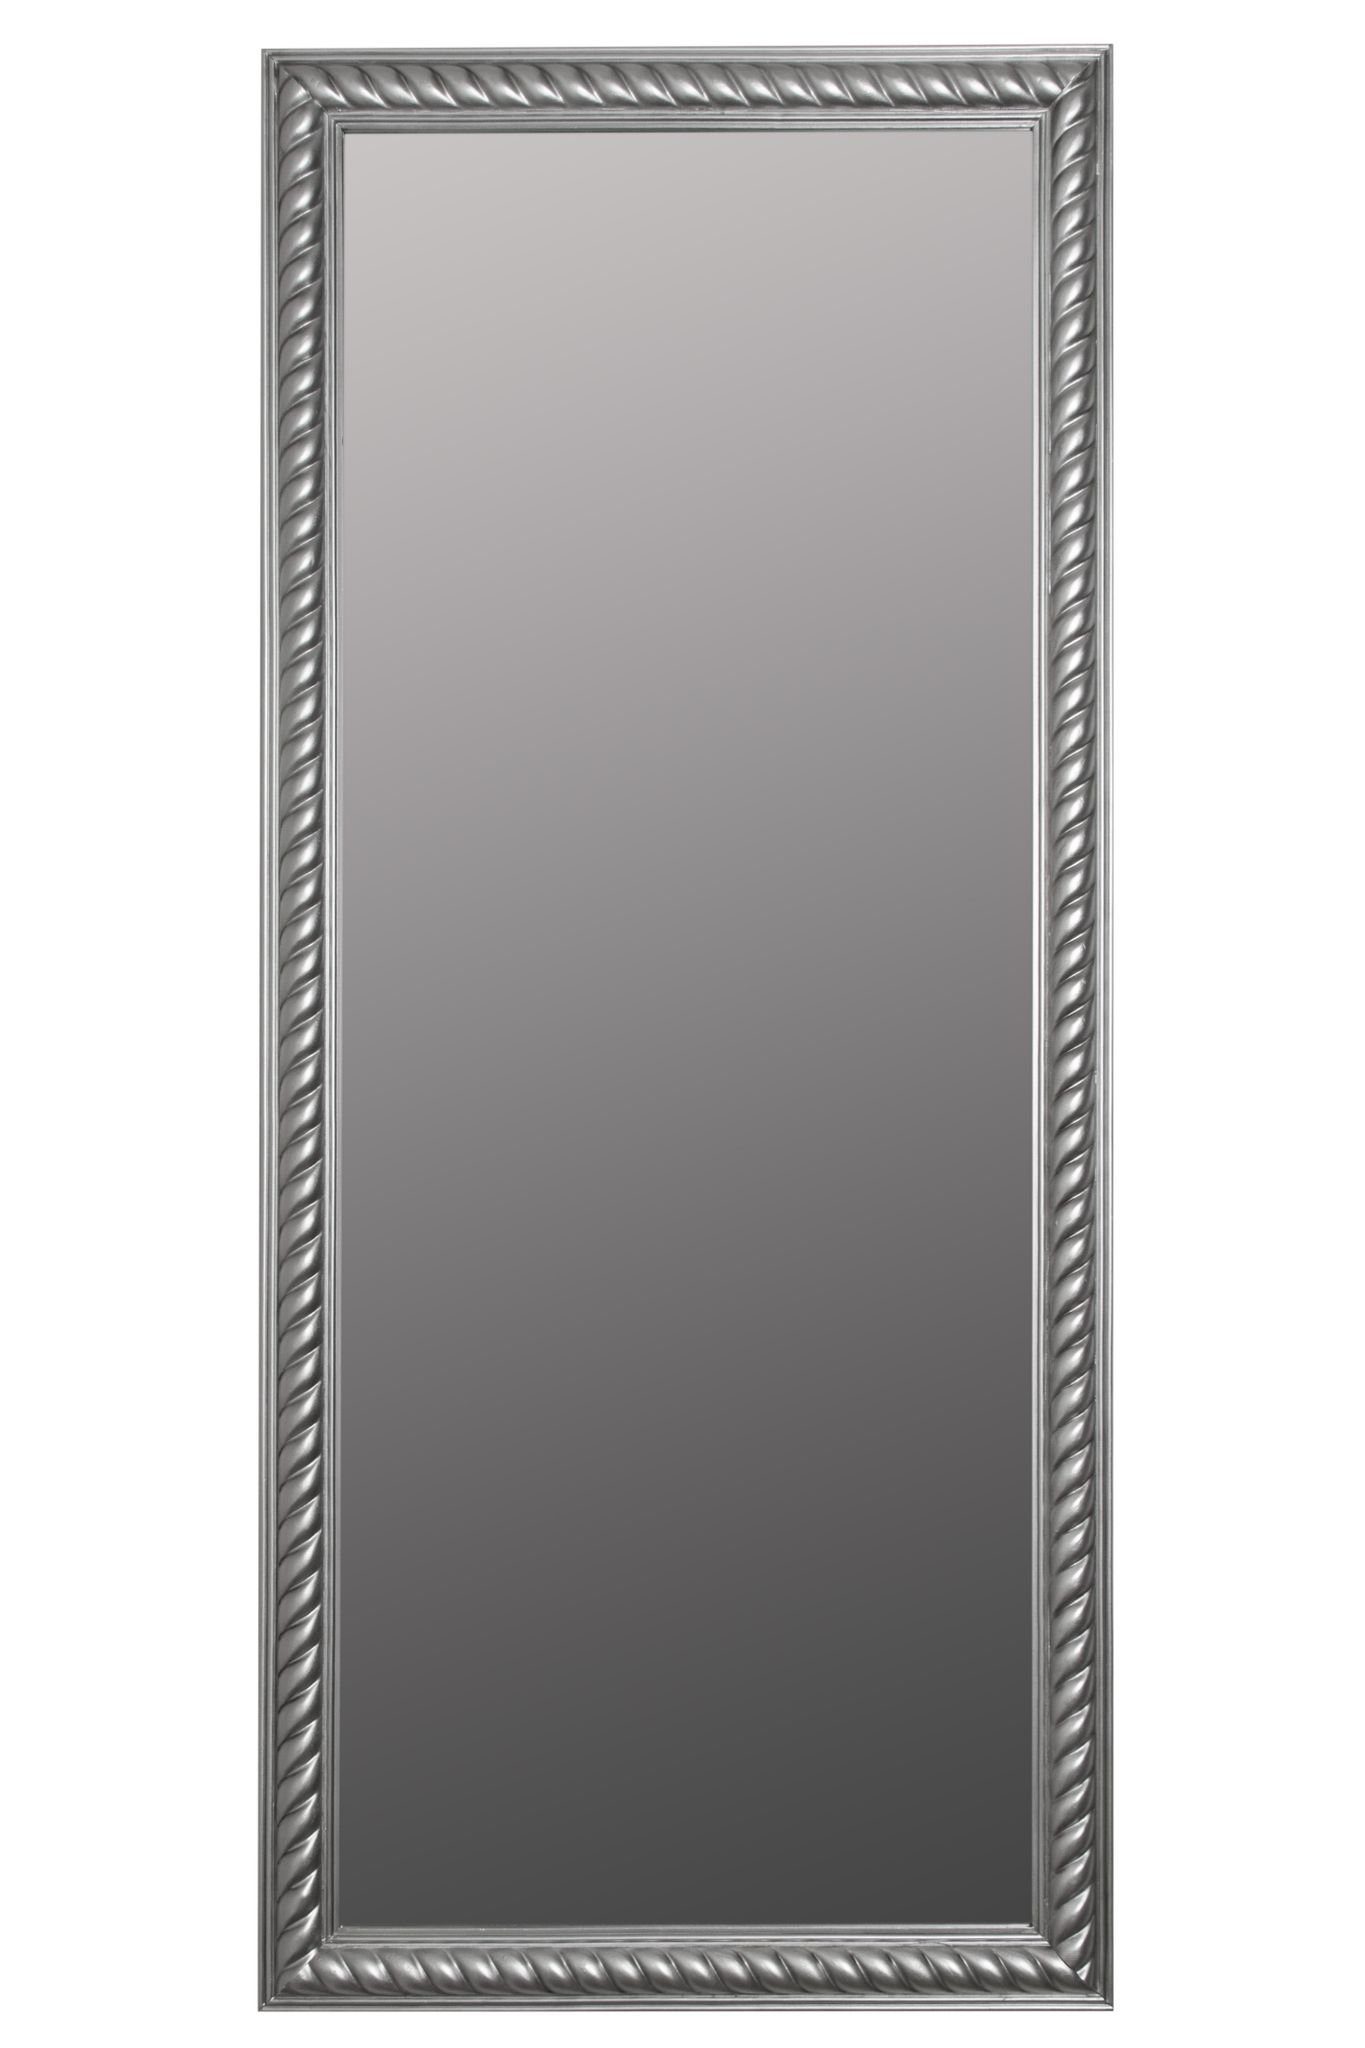 Spiegel Kordelrahmen 72x162x7 Wandspiegel | Badezimmerspiegel, silber vintage cm holz silber antik Wandspiegel: elbmöbel Wandspiegel silber